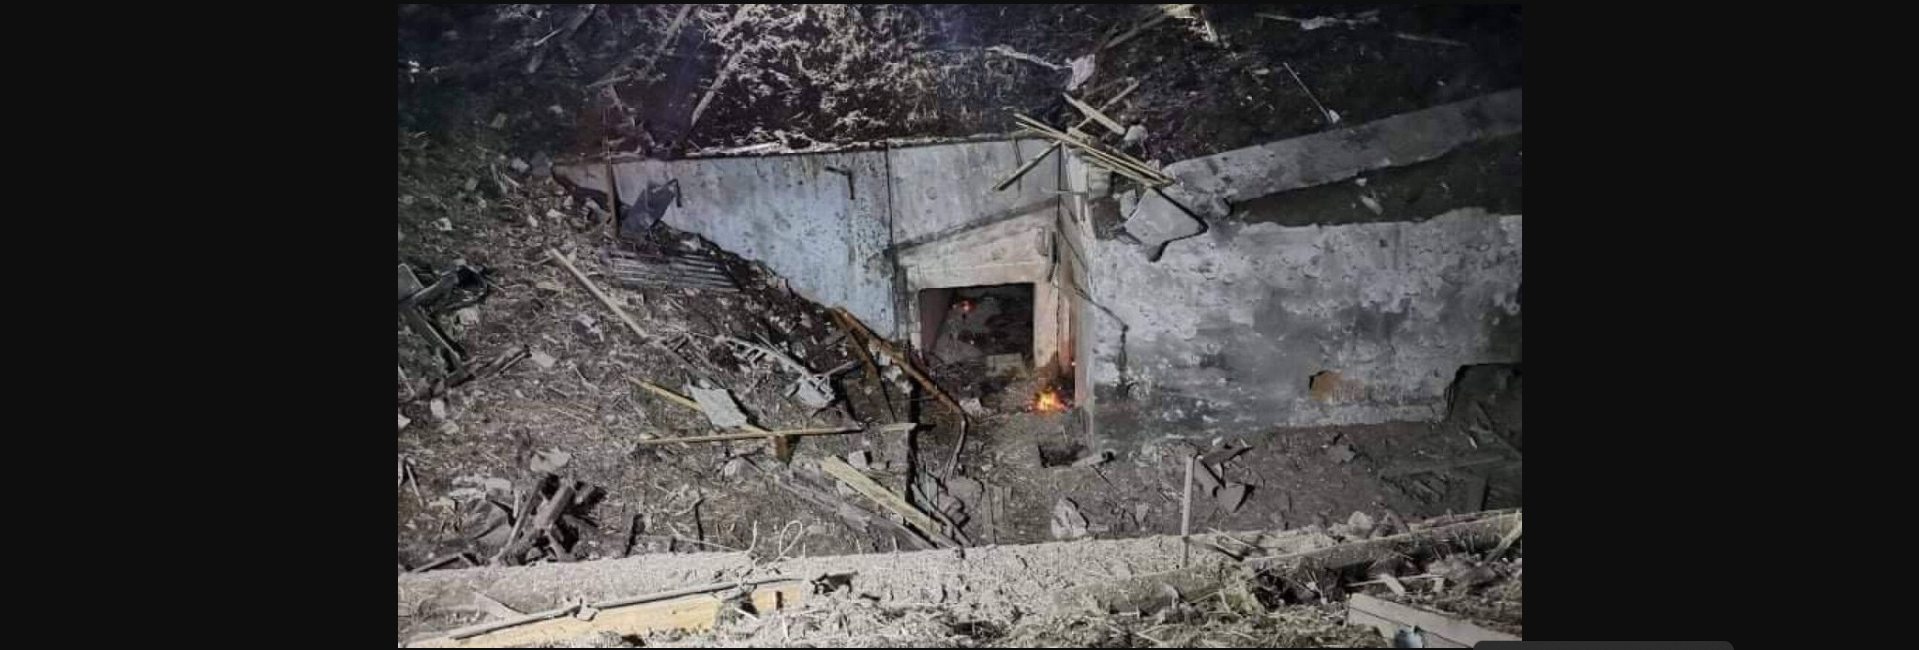 Πολωνία: Τέσσερις νεκροί και ένας τραυματίας από δυστύχημα σε ορυχείο